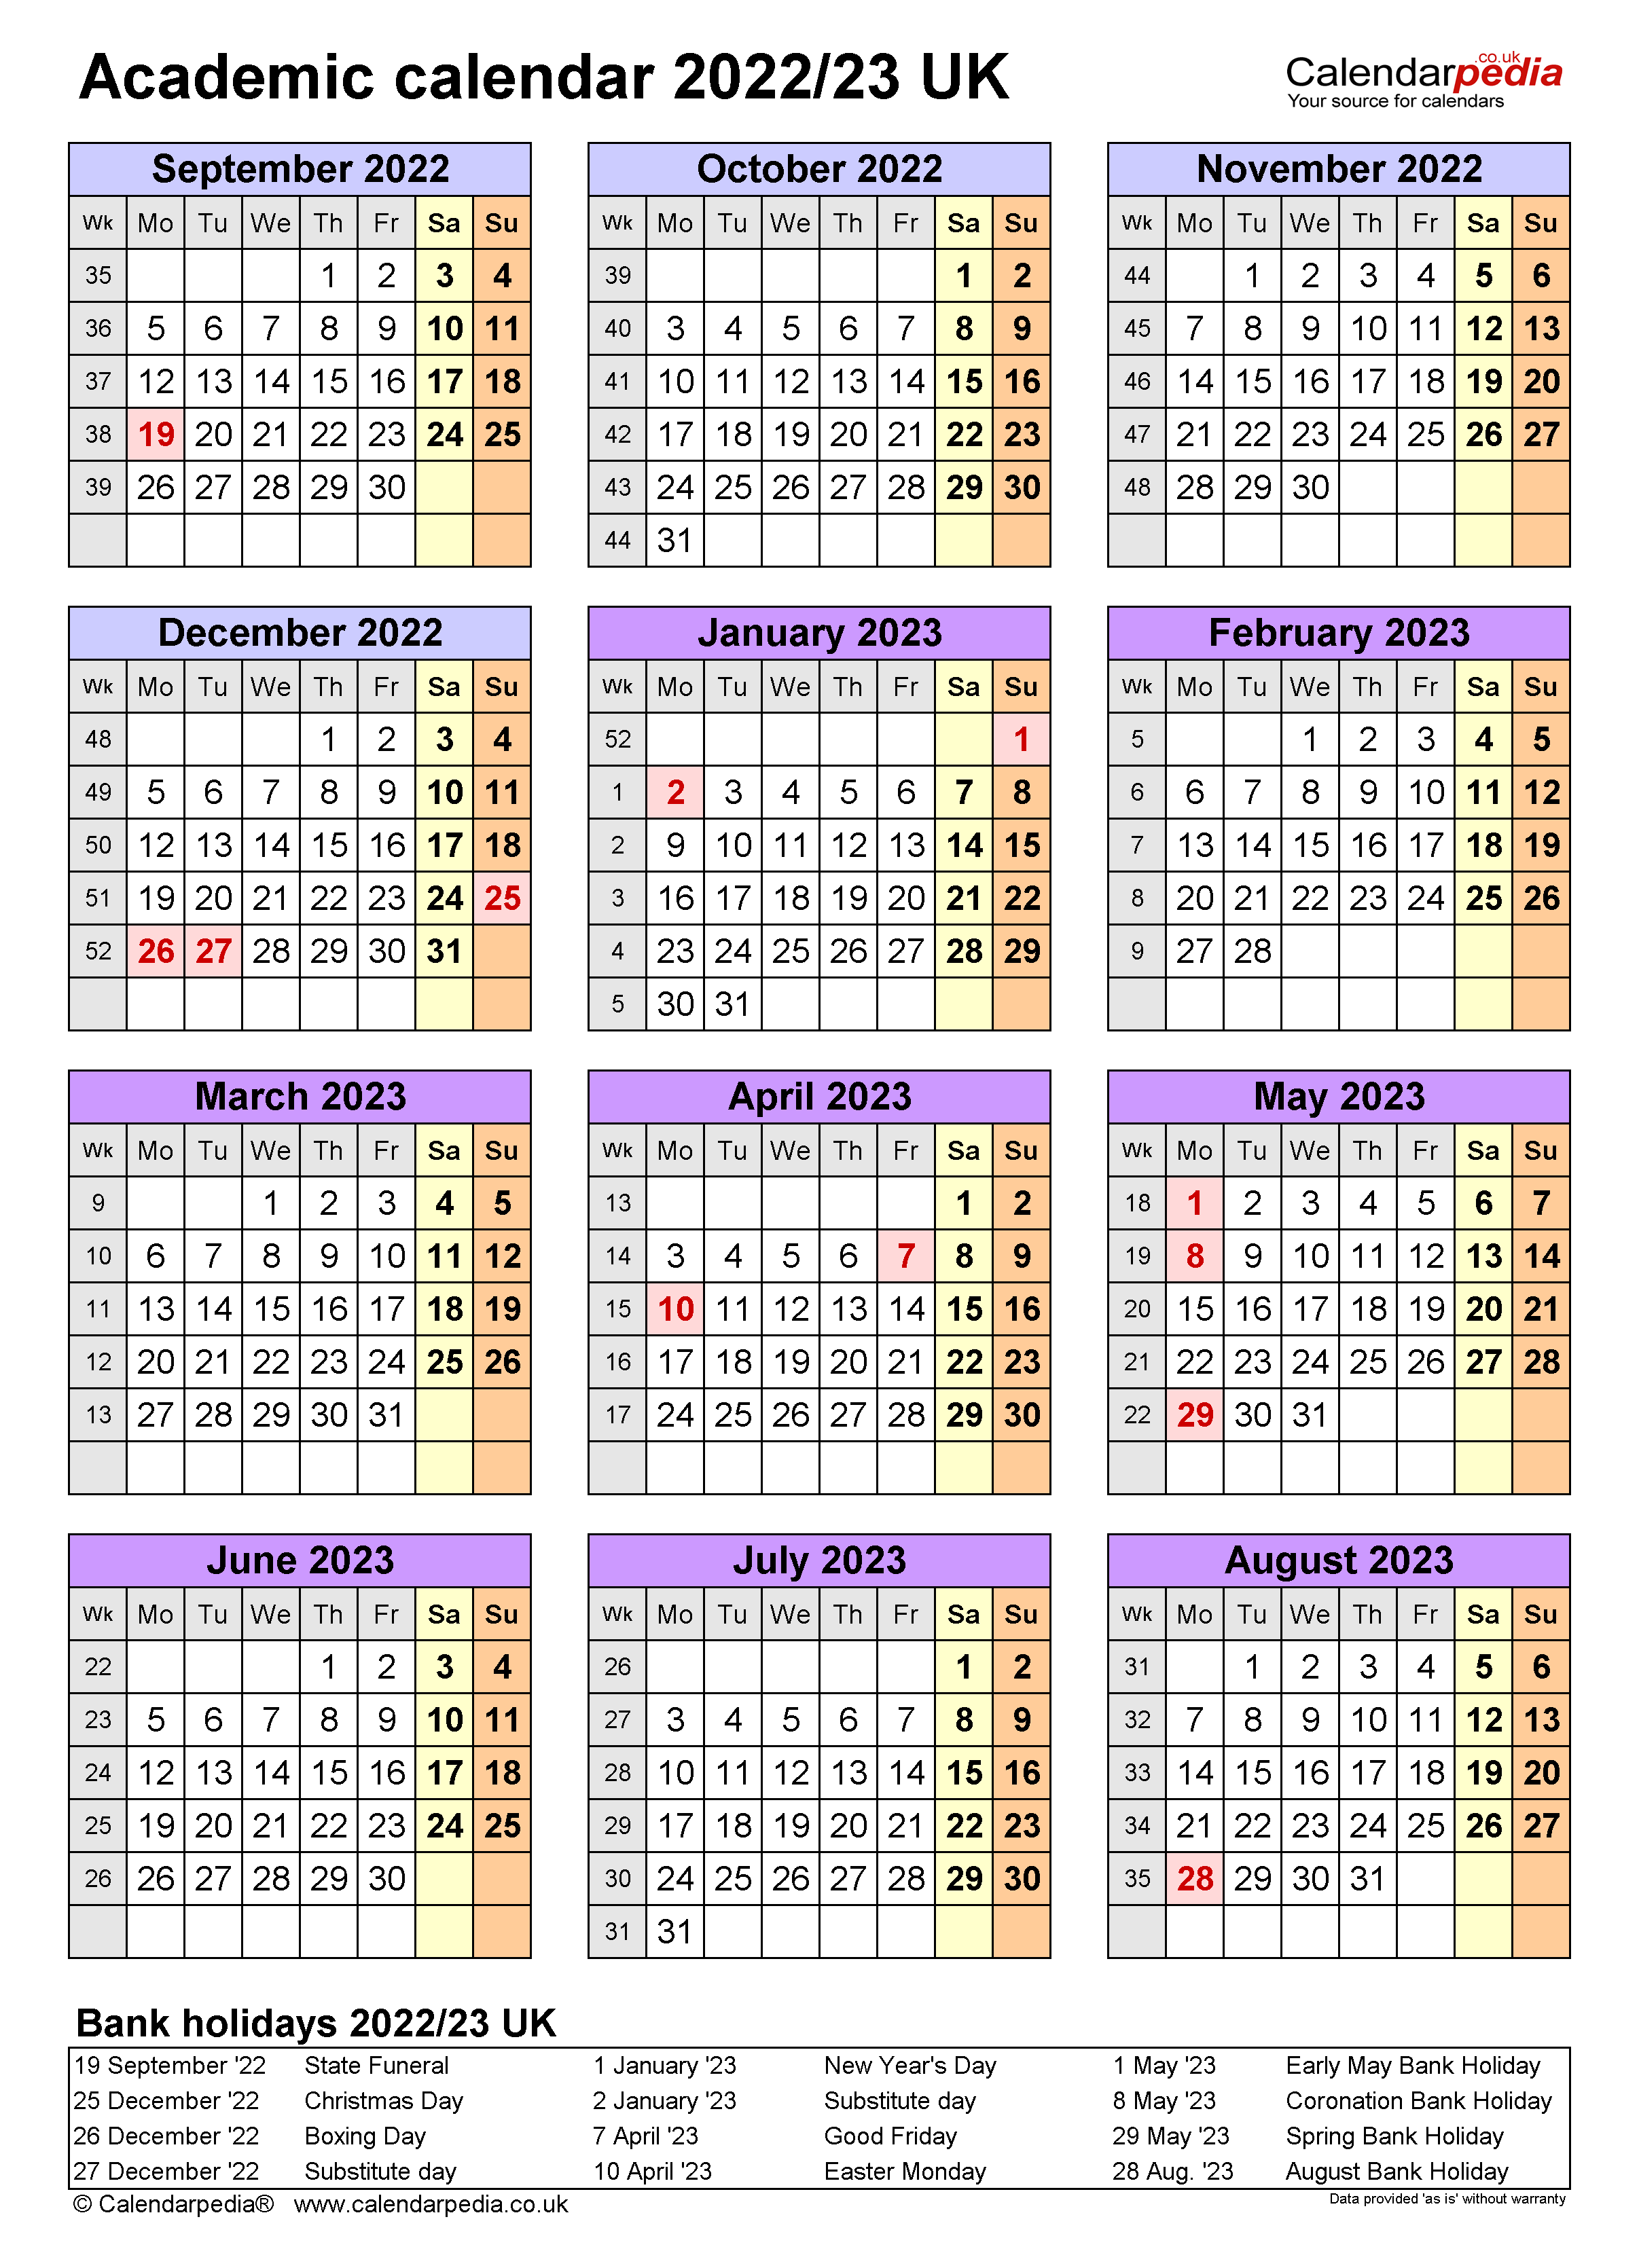 Creighton Academic Calendar 2022 23 March Calendar 2022